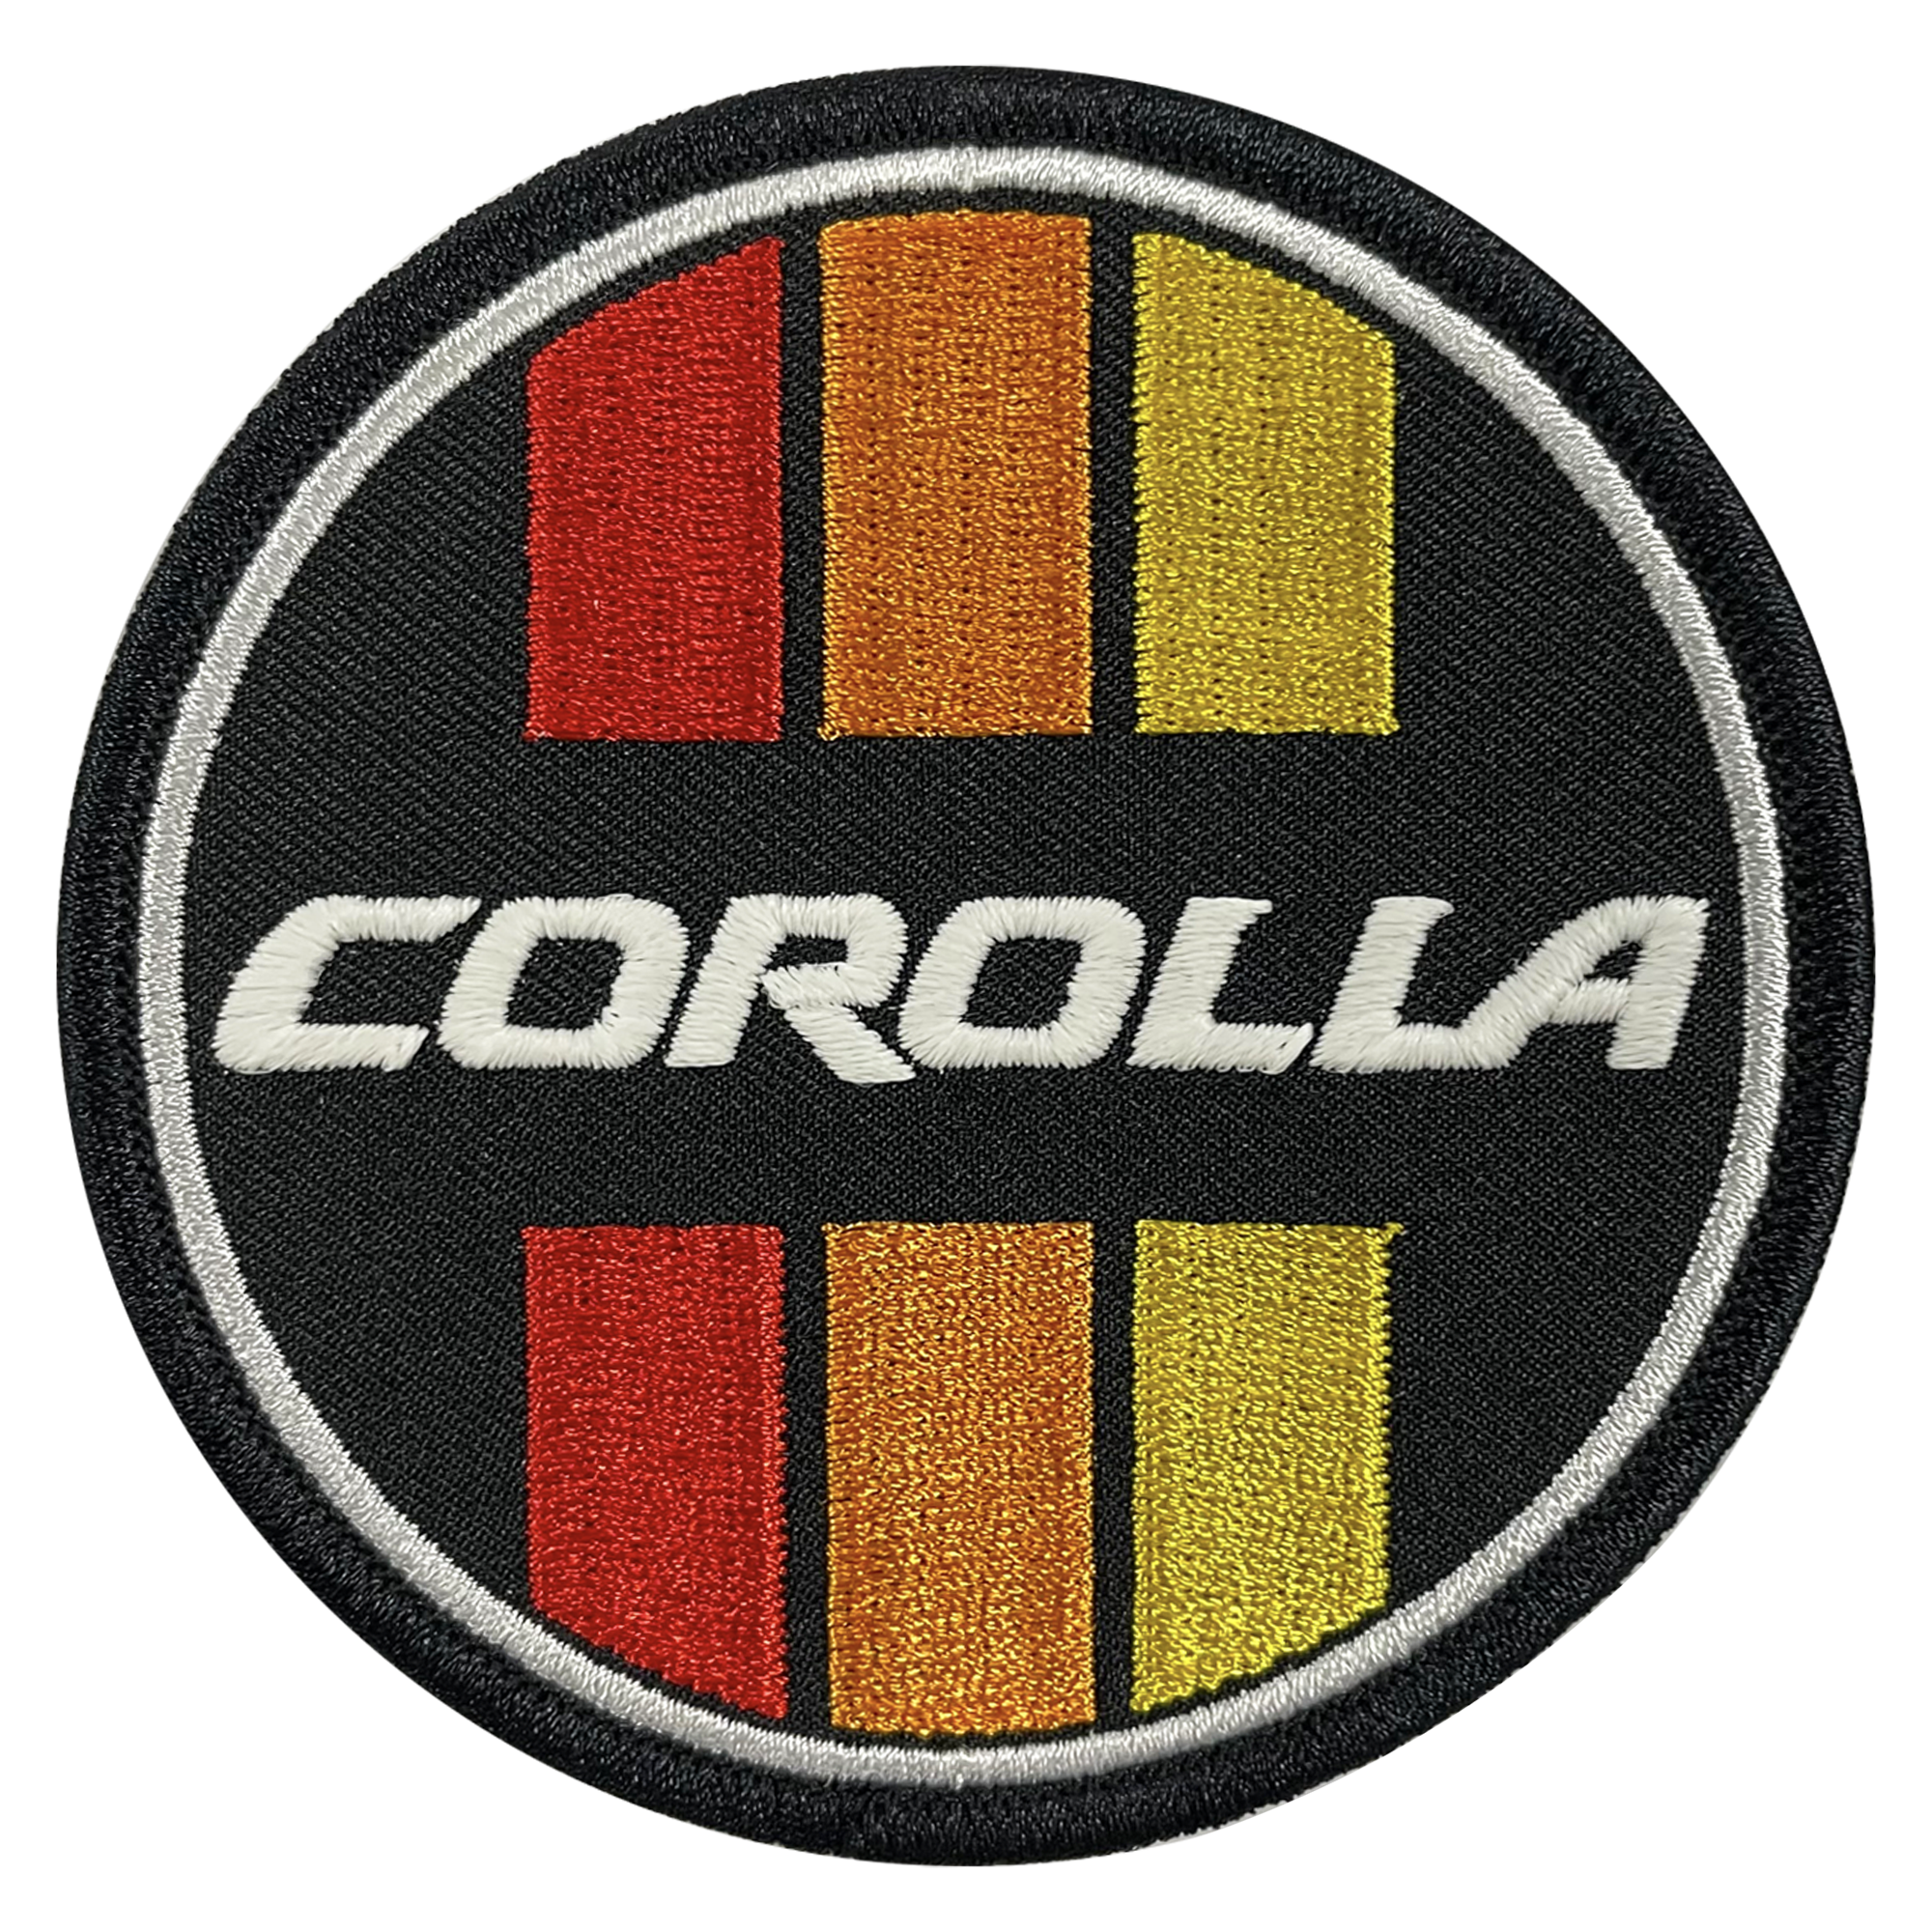 Corolla Retro Circle Patch - GZila Designs